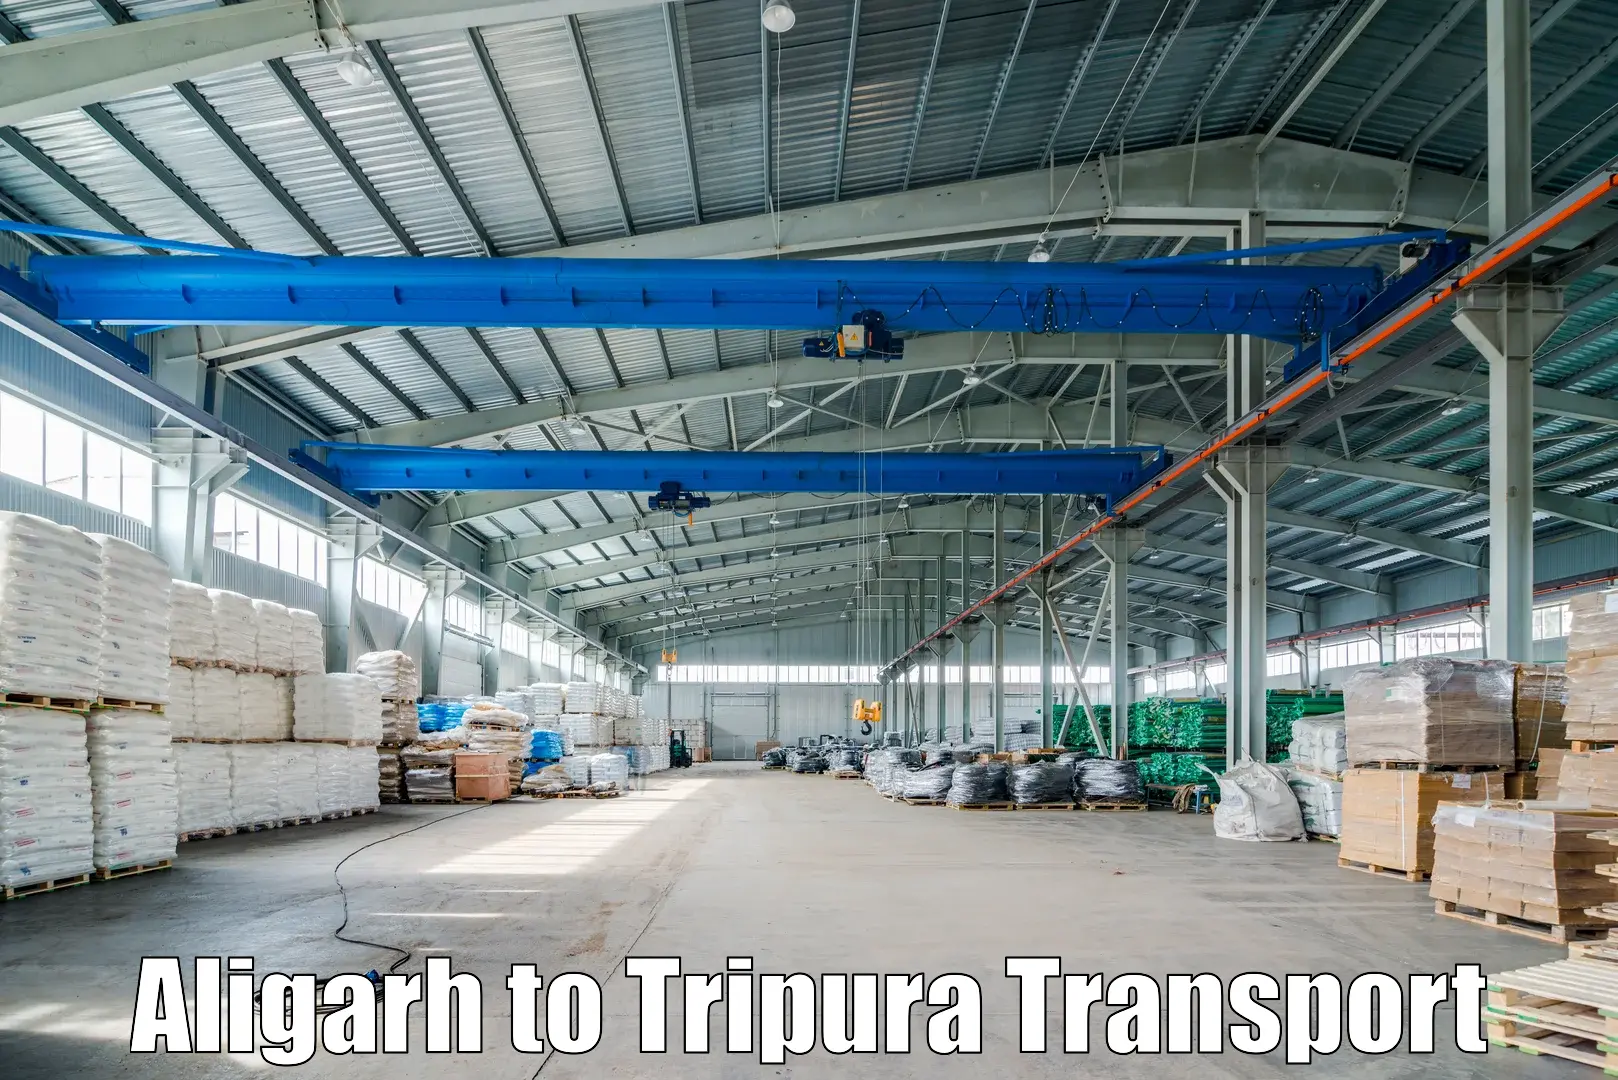 Nearby transport service Aligarh to IIIT Agartala